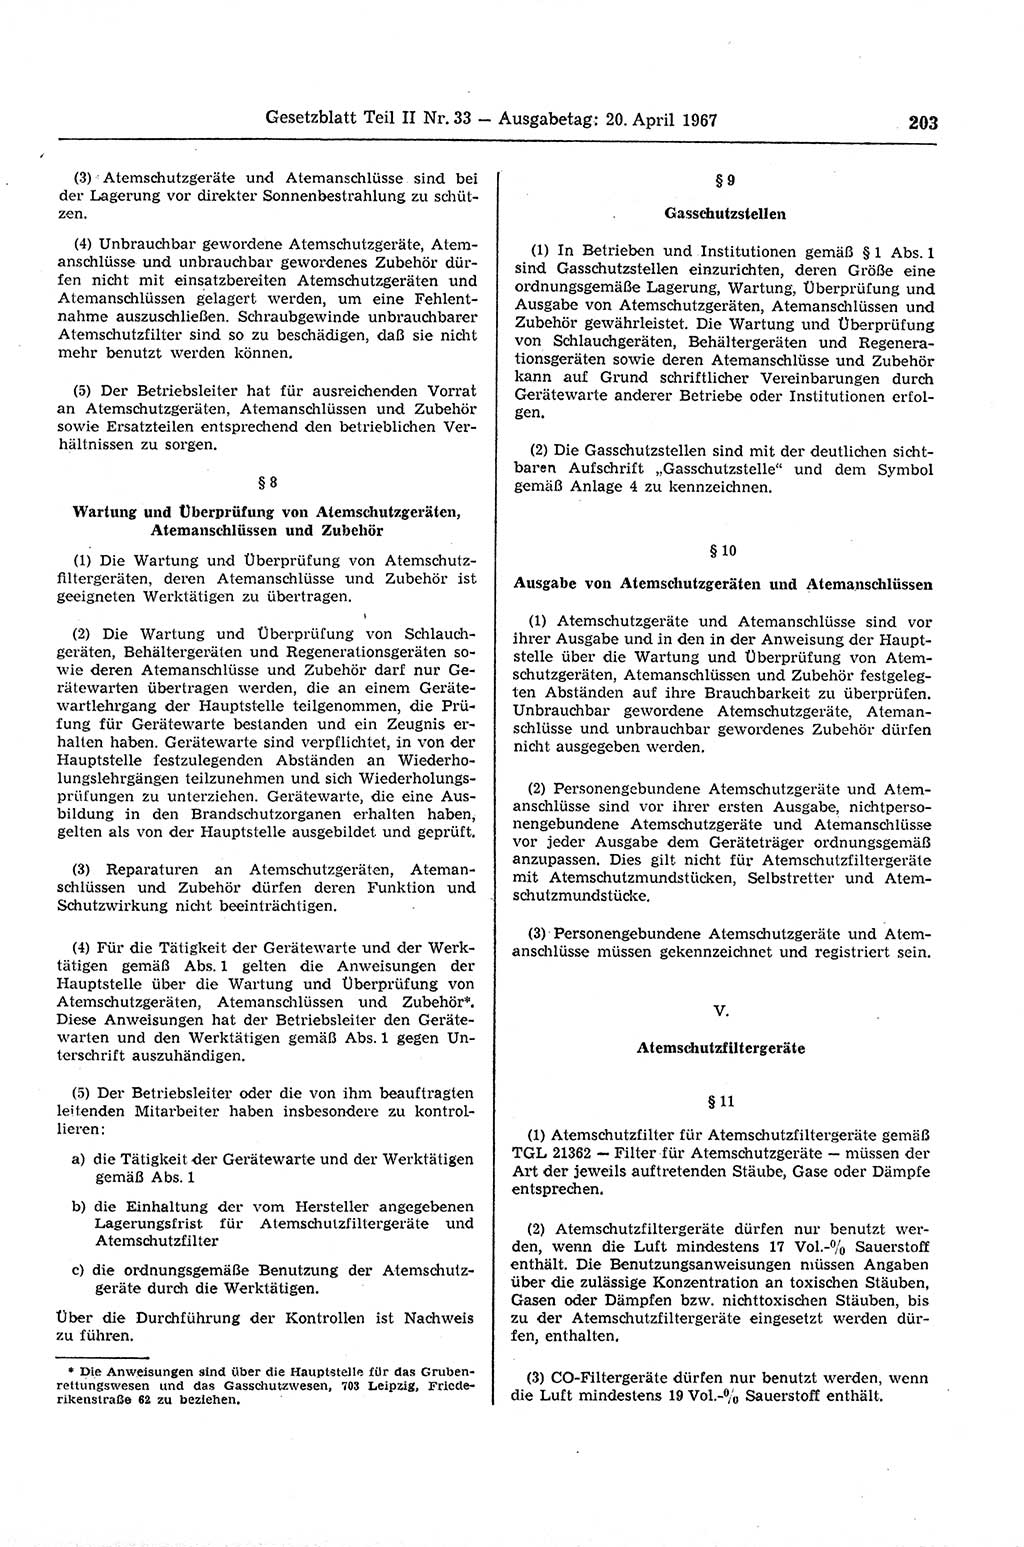 Gesetzblatt (GBl.) der Deutschen Demokratischen Republik (DDR) Teil ⅠⅠ 1967, Seite 203 (GBl. DDR ⅠⅠ 1967, S. 203)